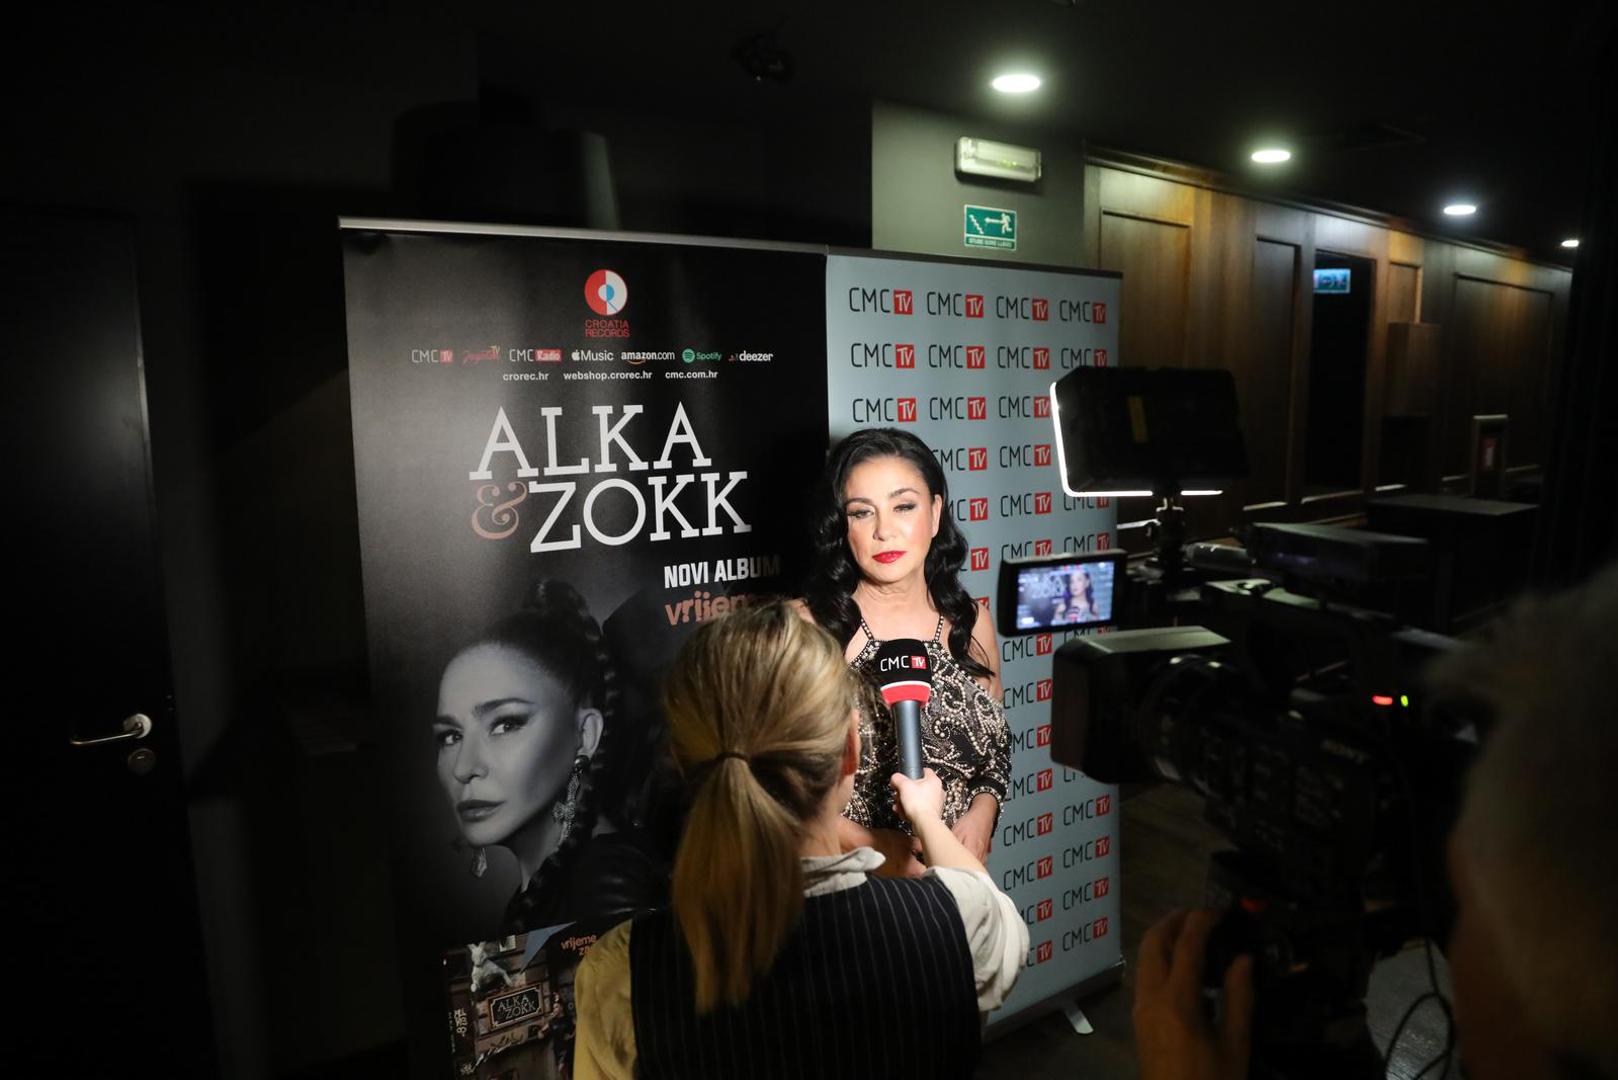 Glazbenica Alka Vuica u četvrtak je održala koncertu premijeru albuma "Vrijeme je za nas" na kojem je radila s gitaristom Zoranom Šerbedžijom, umjetničkog imena ZoKk.